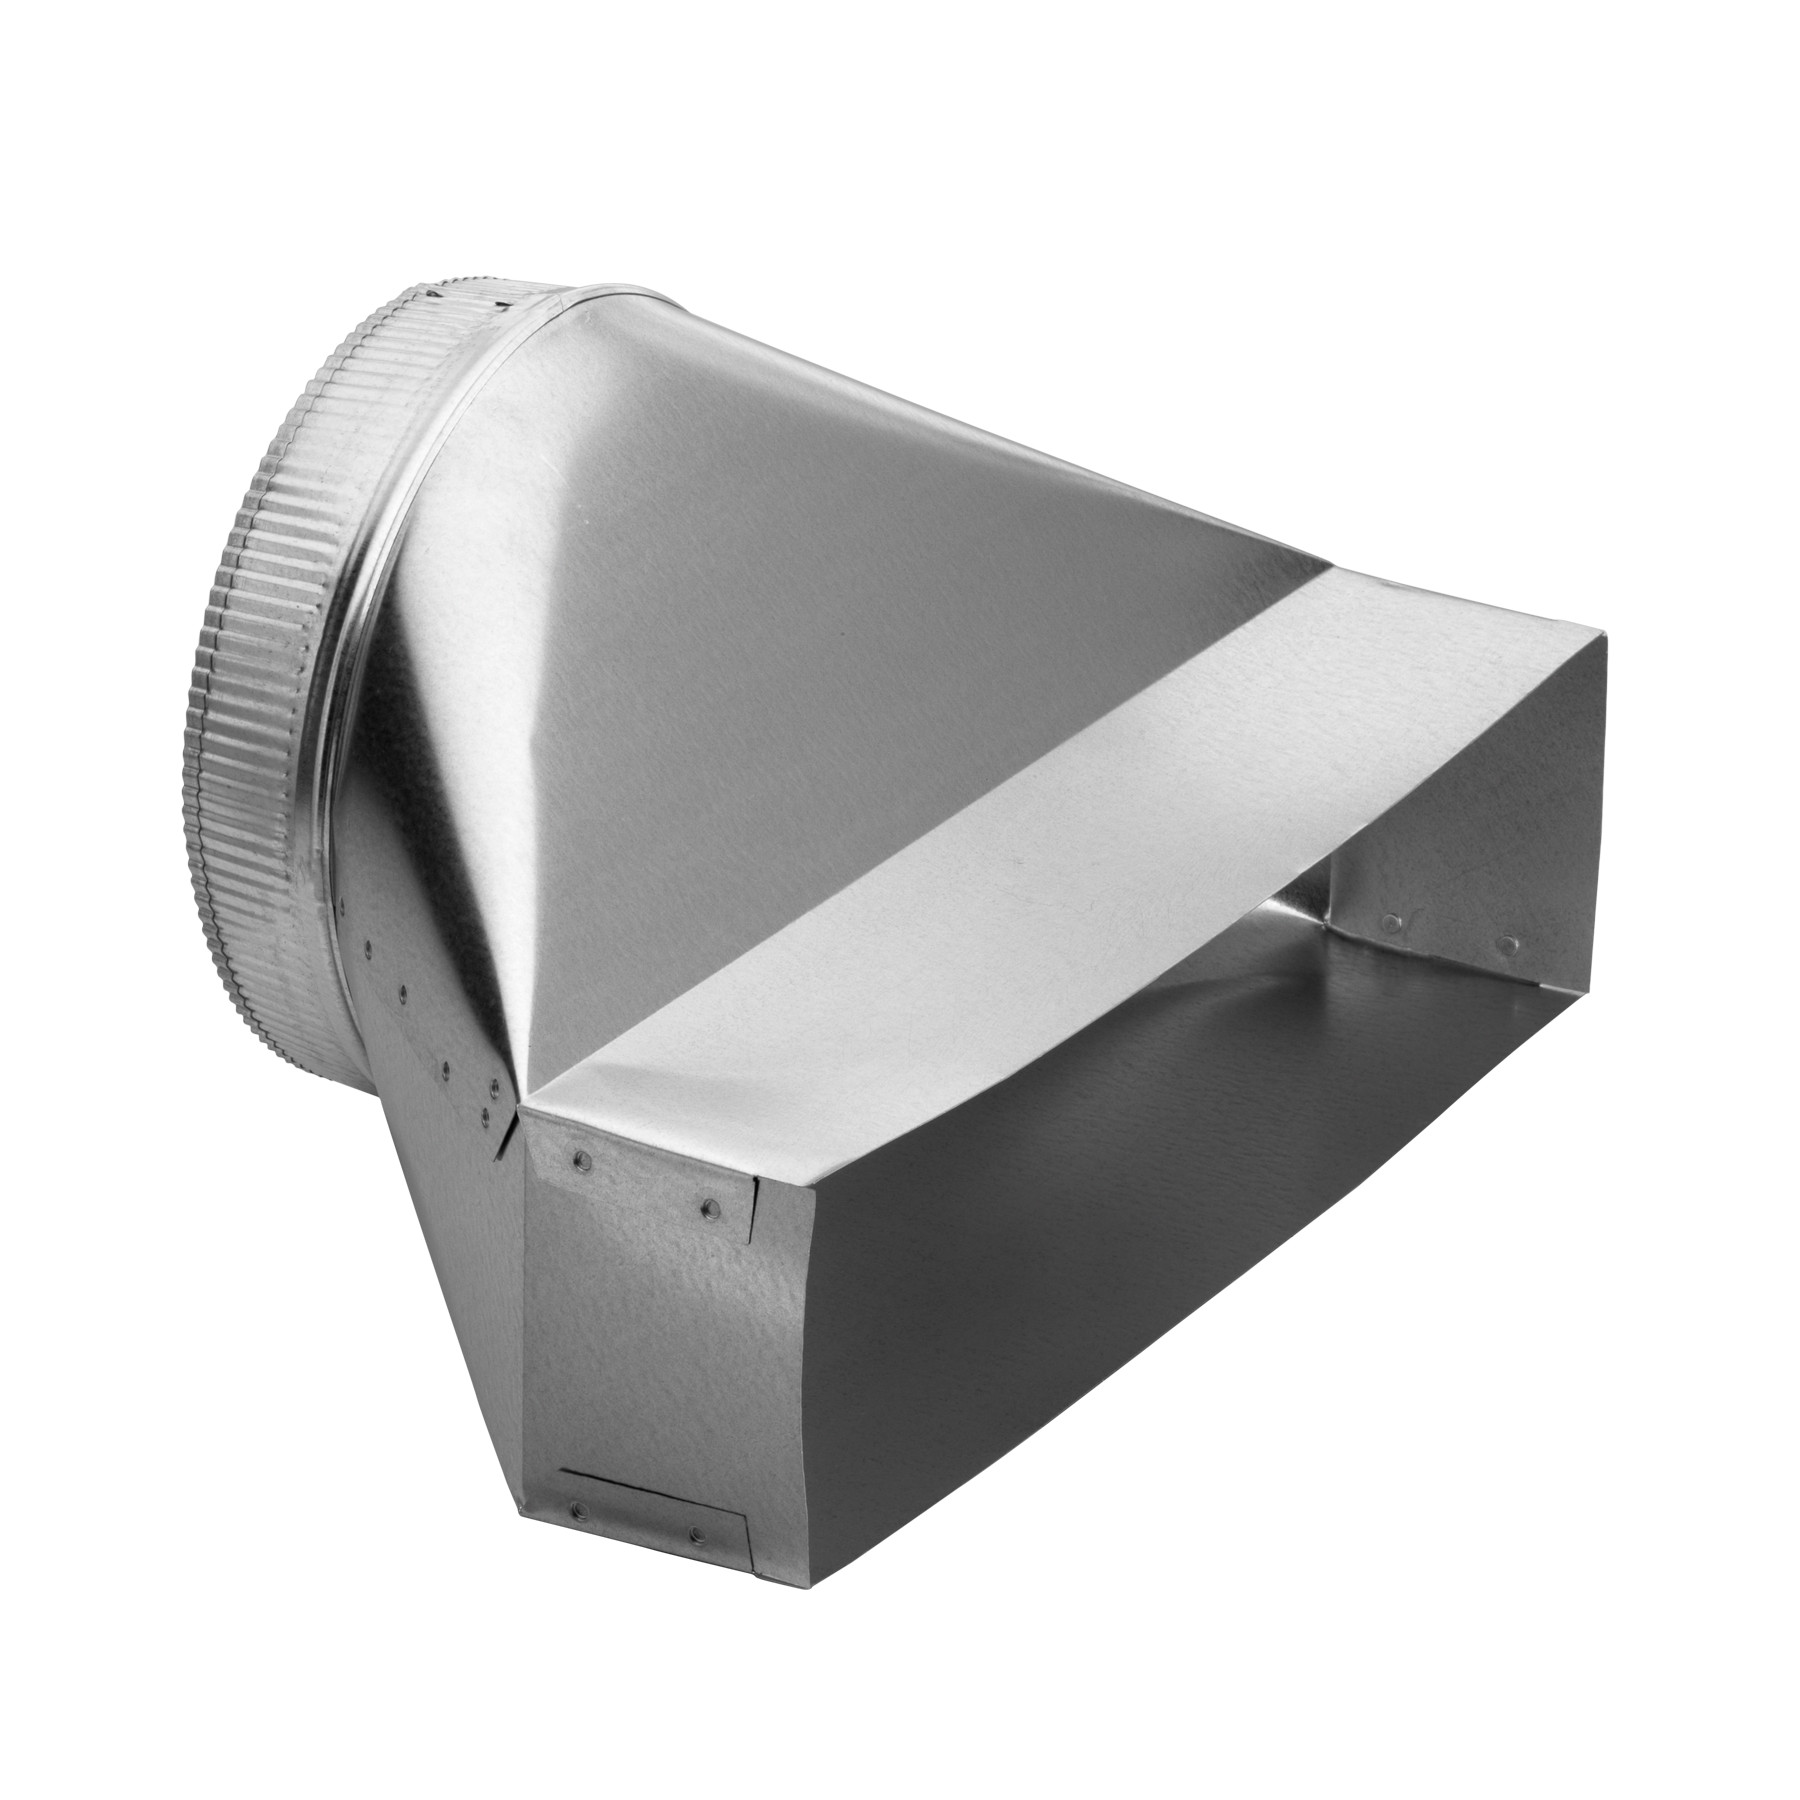 Raccord de 10 po rond ou rectangulaire de Broan-NuTone® pour hottes de cuisinière et ventilateurs de salle de bain